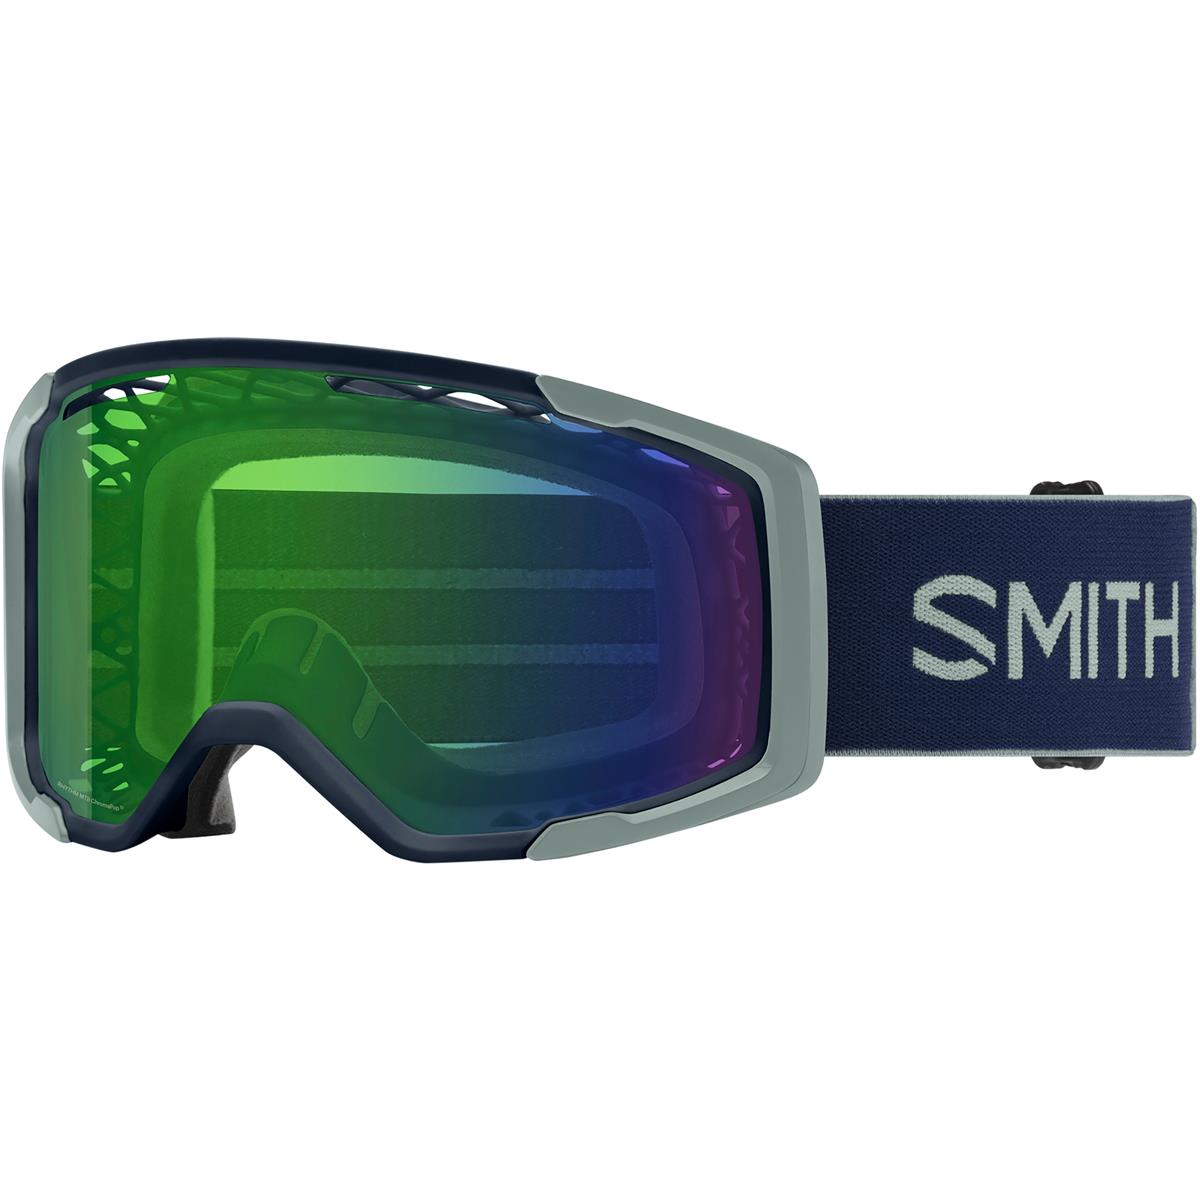 Smith Maschera MTB Rhythm MTB Midnight Navy/Sage Brush - Chromapop Everyday Green Mirror